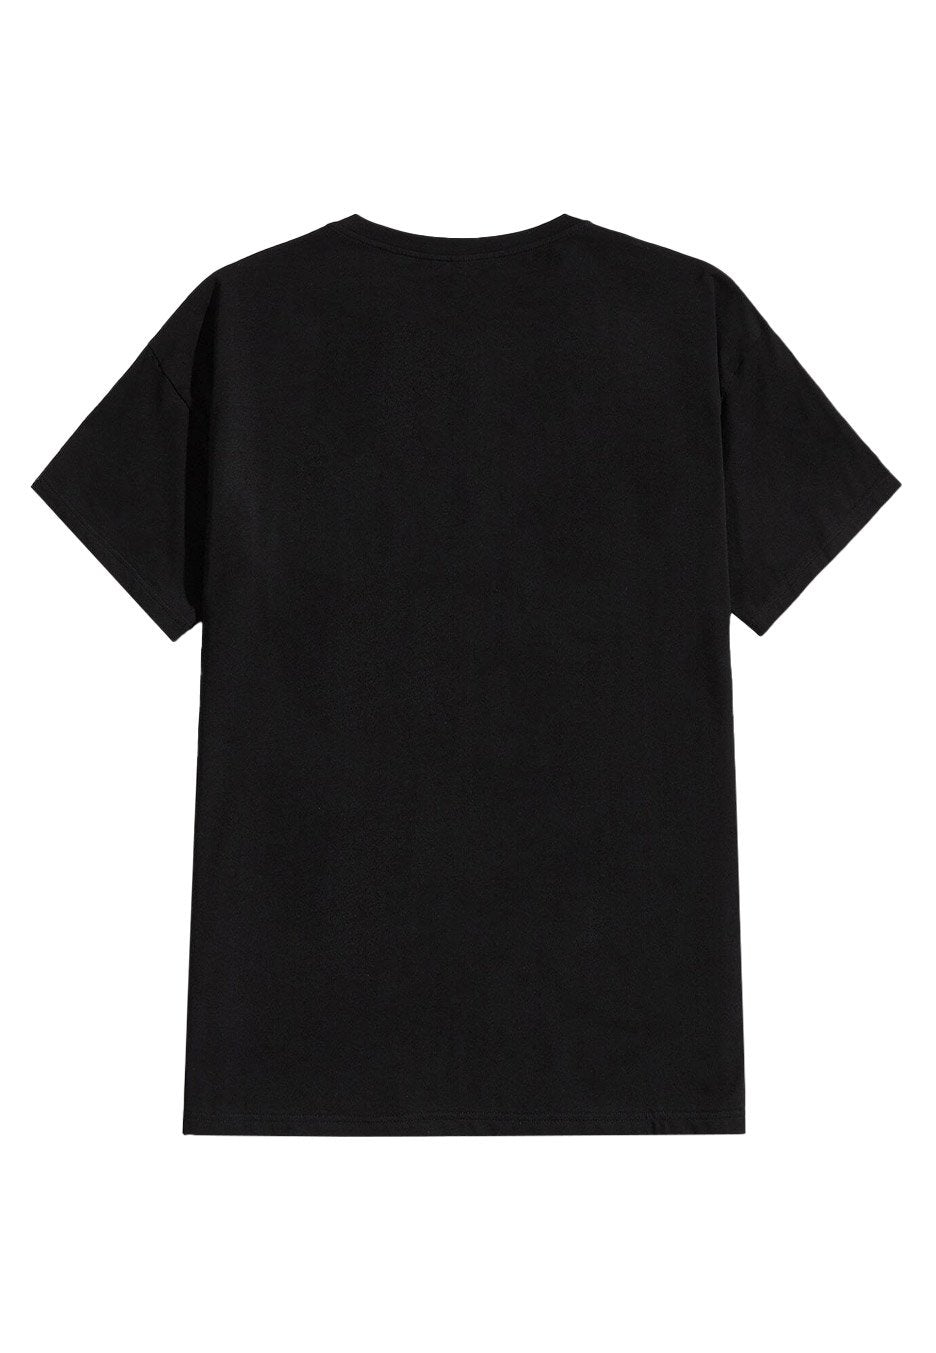 Bathory - Shield - T-Shirt